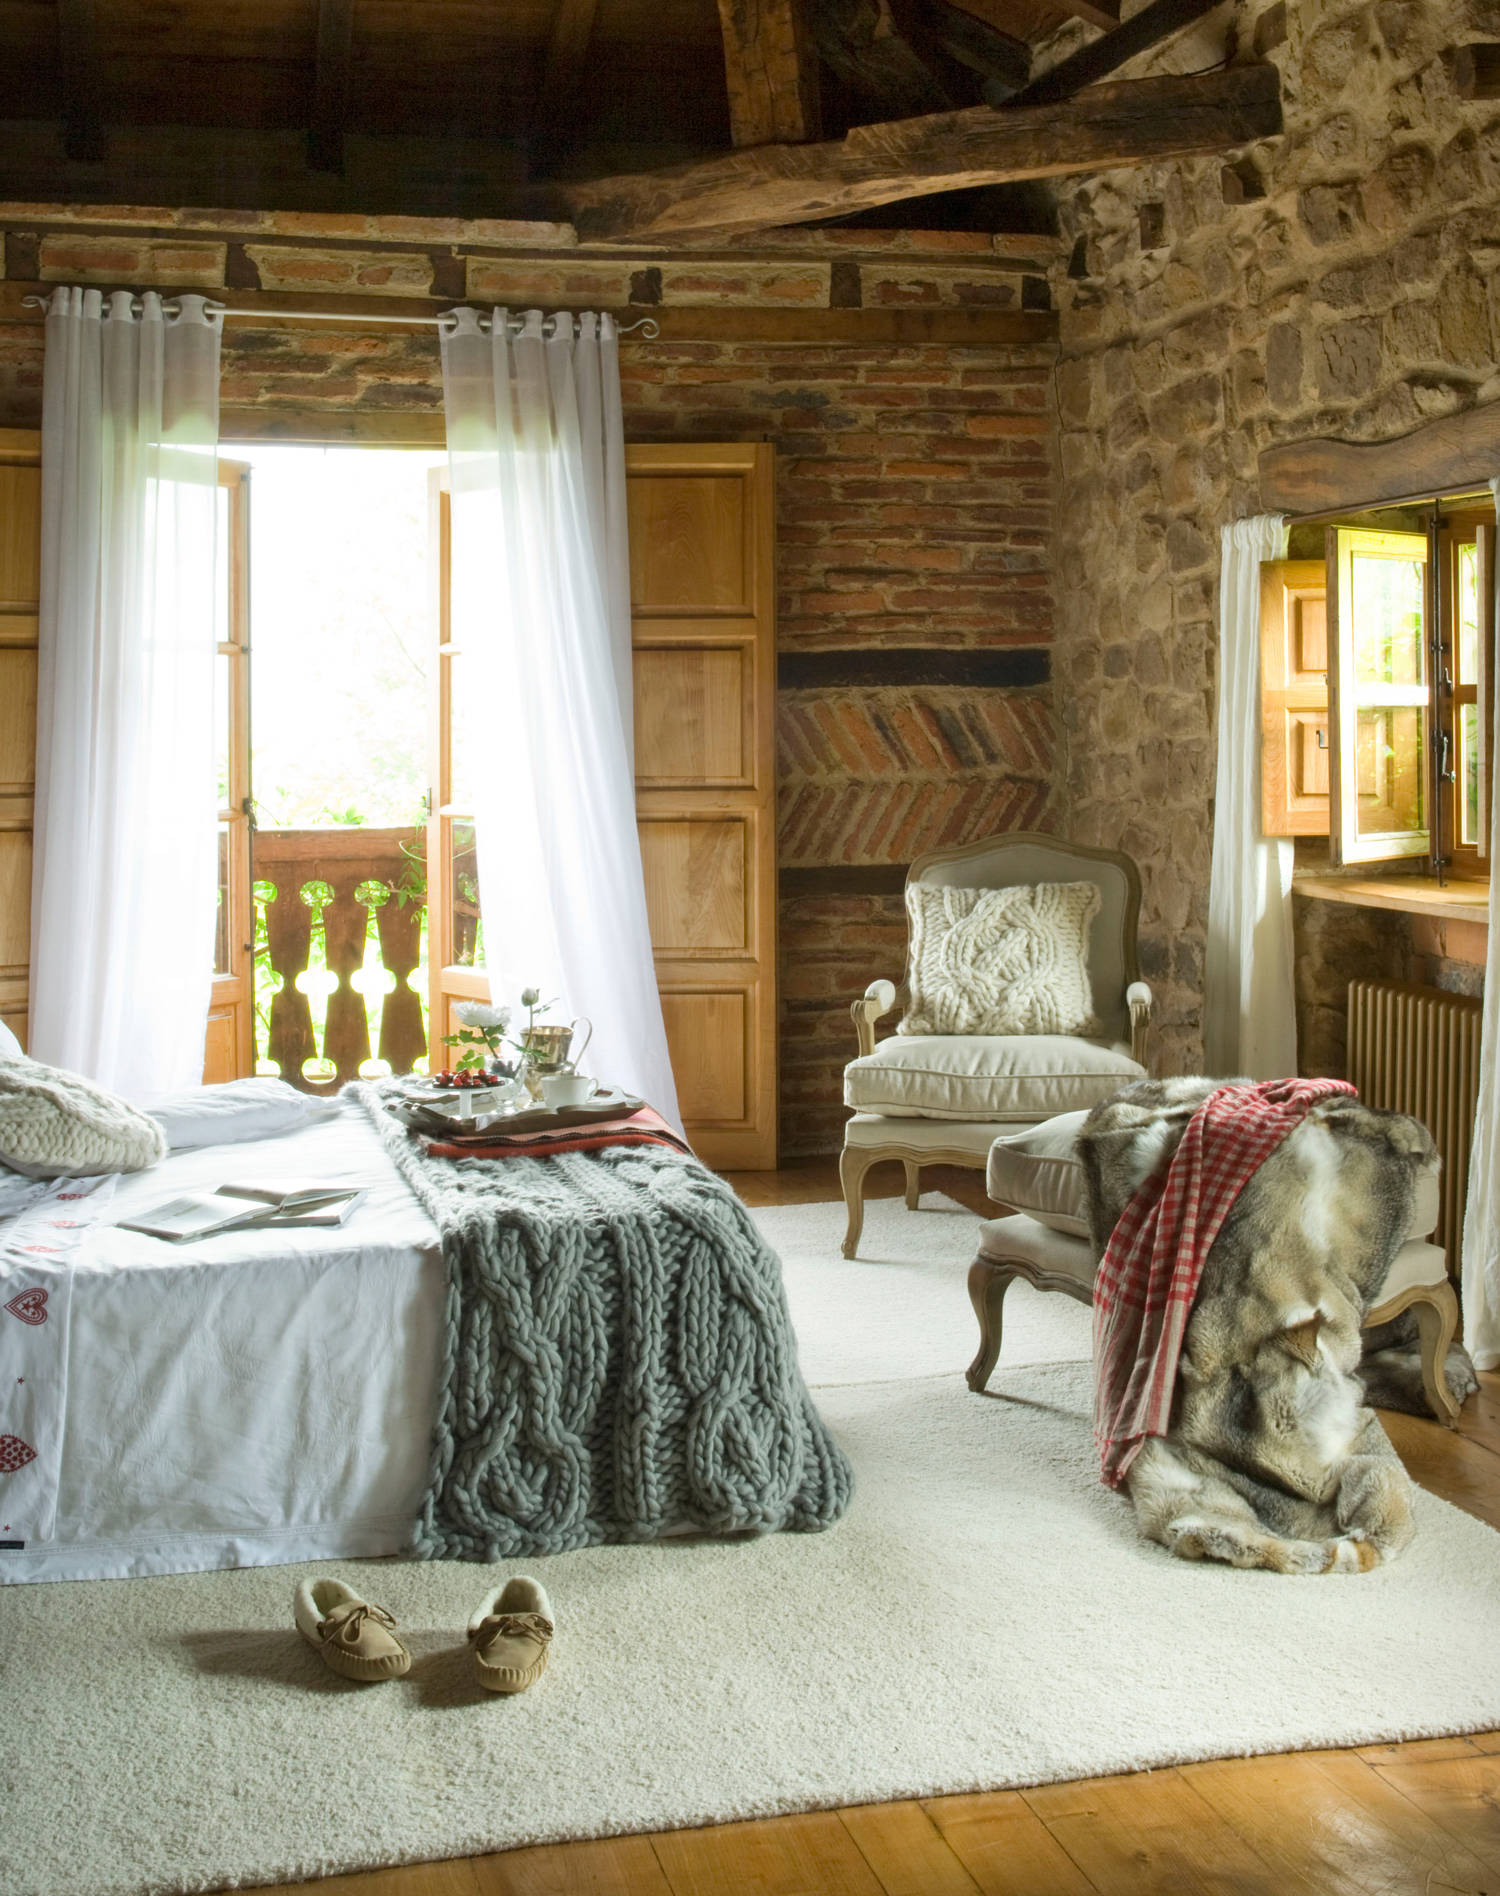 Dormitorio con paredes rústicas en piedra y ladrillo.